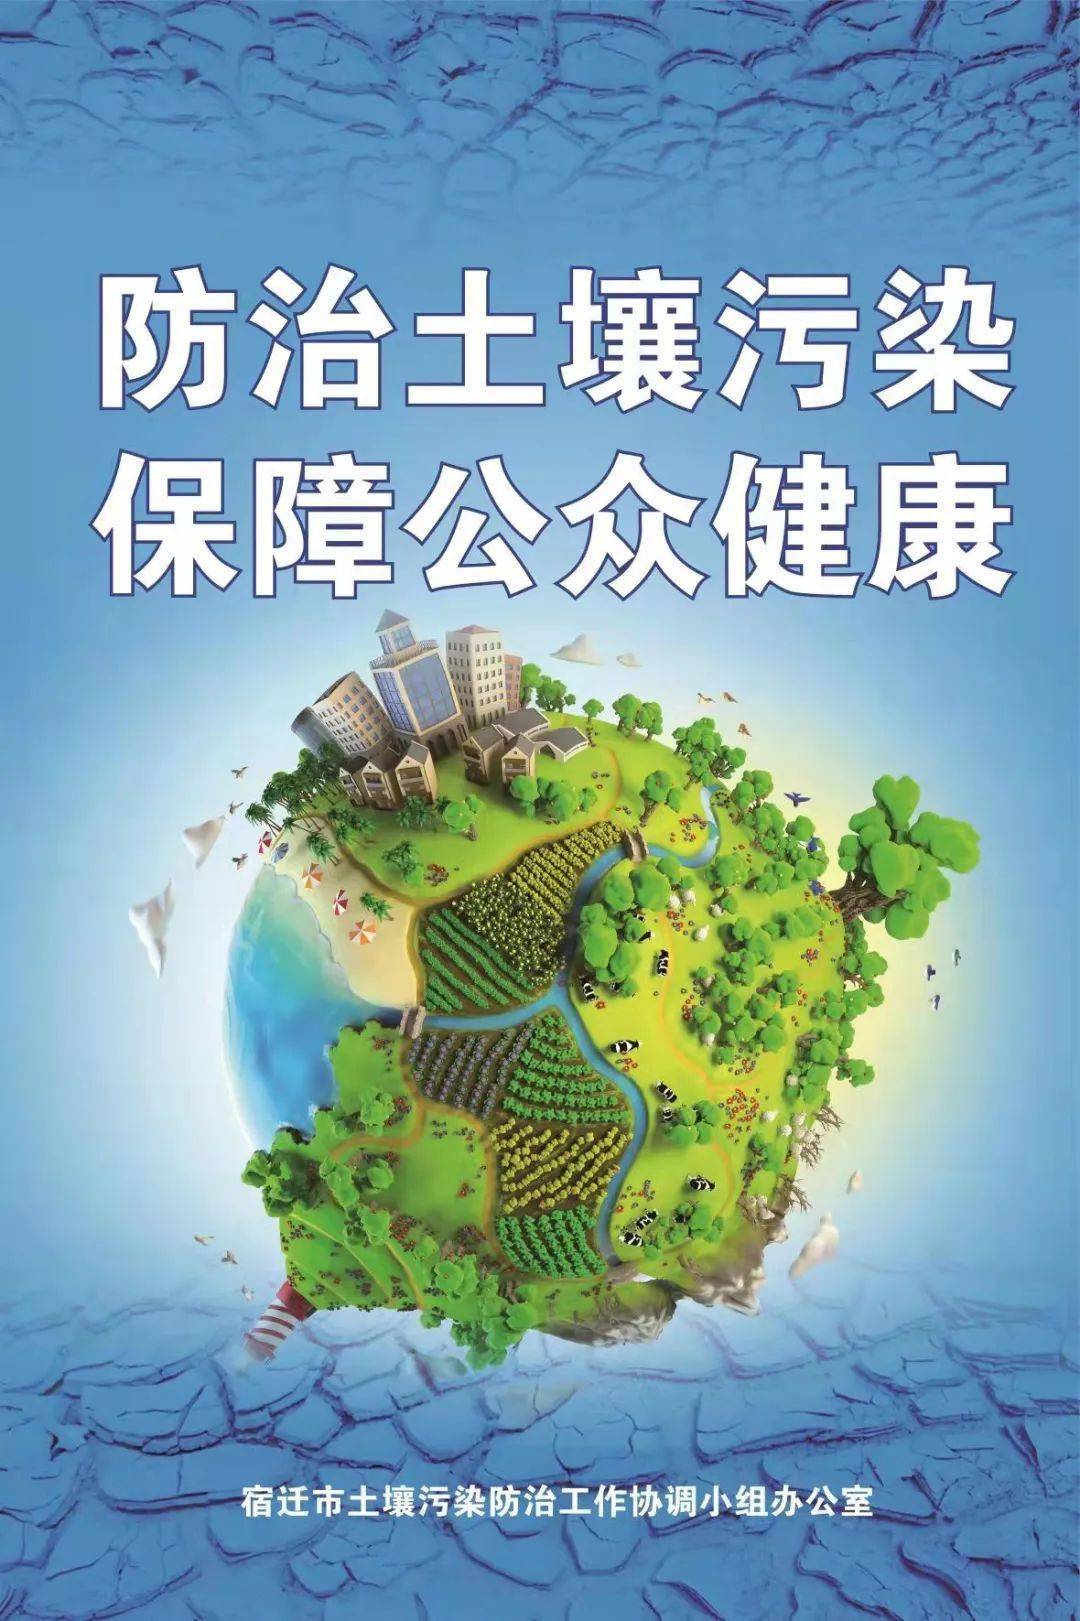 普法宣传《中华人民共和国土壤污染防治法》亮点解读_风险管控